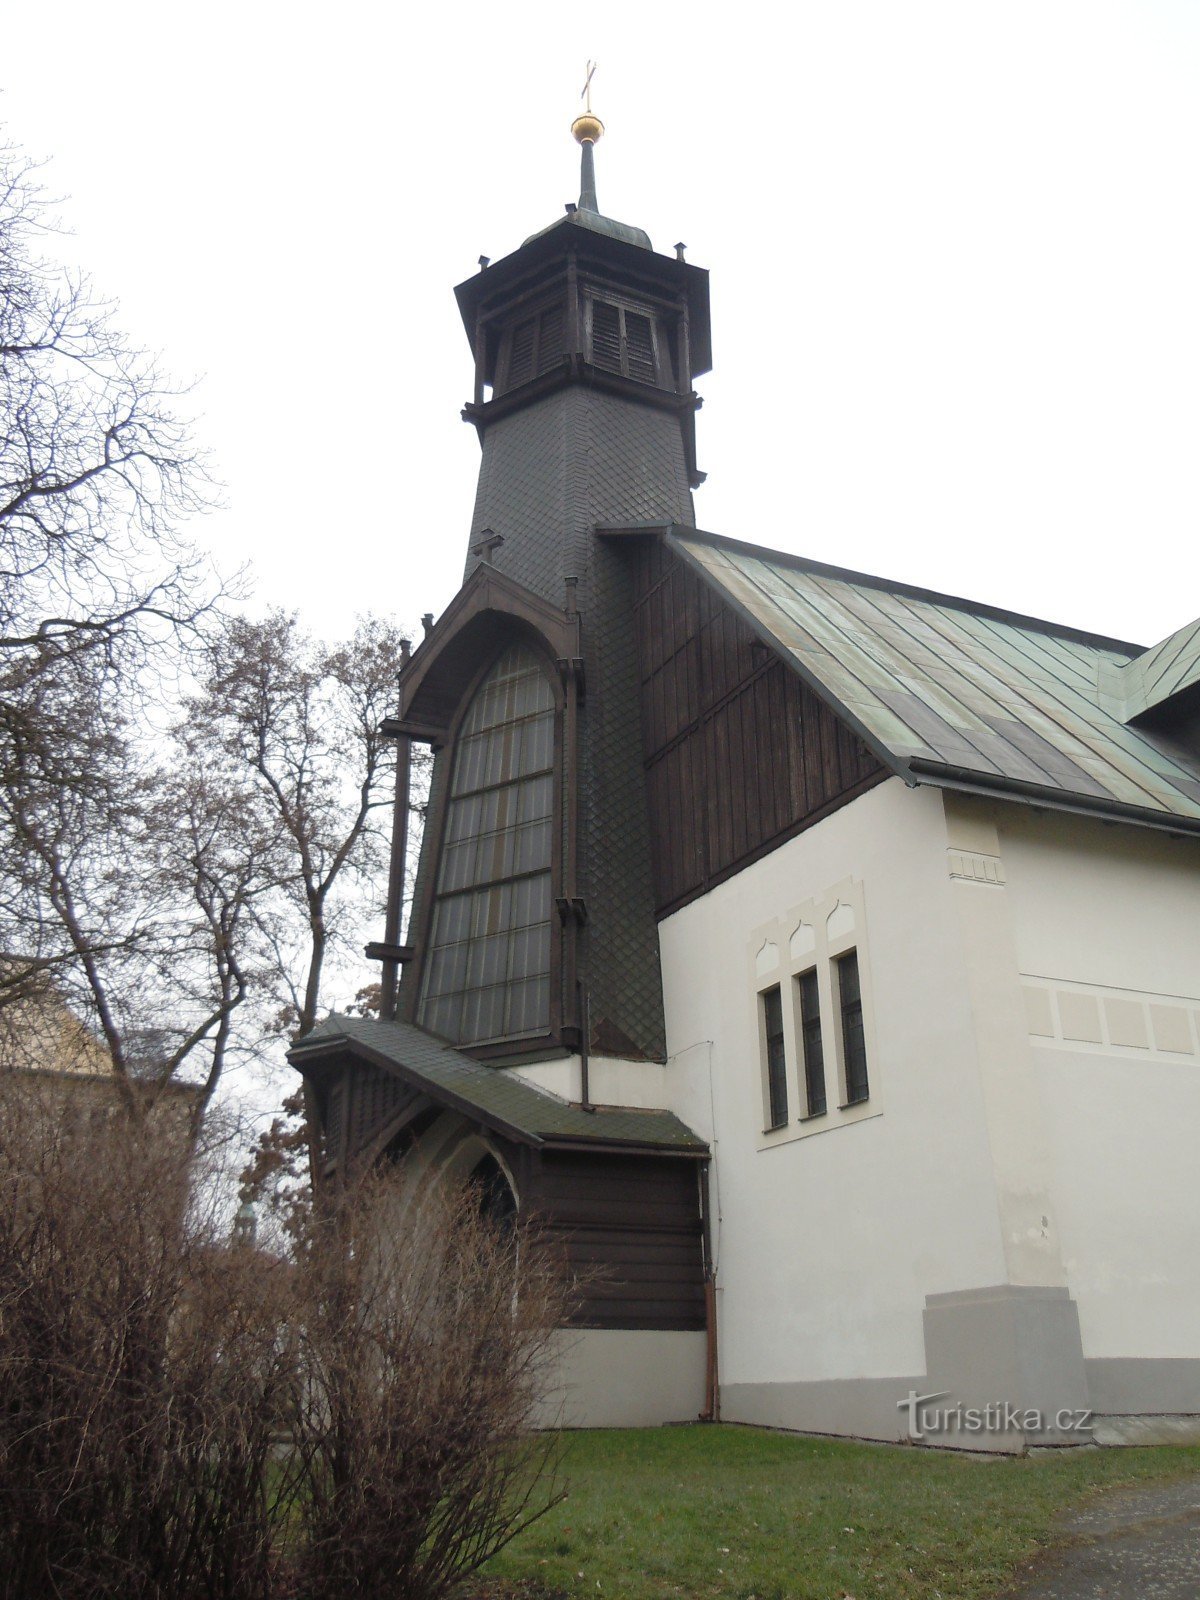 Libeň - Church of St. Vojtěch